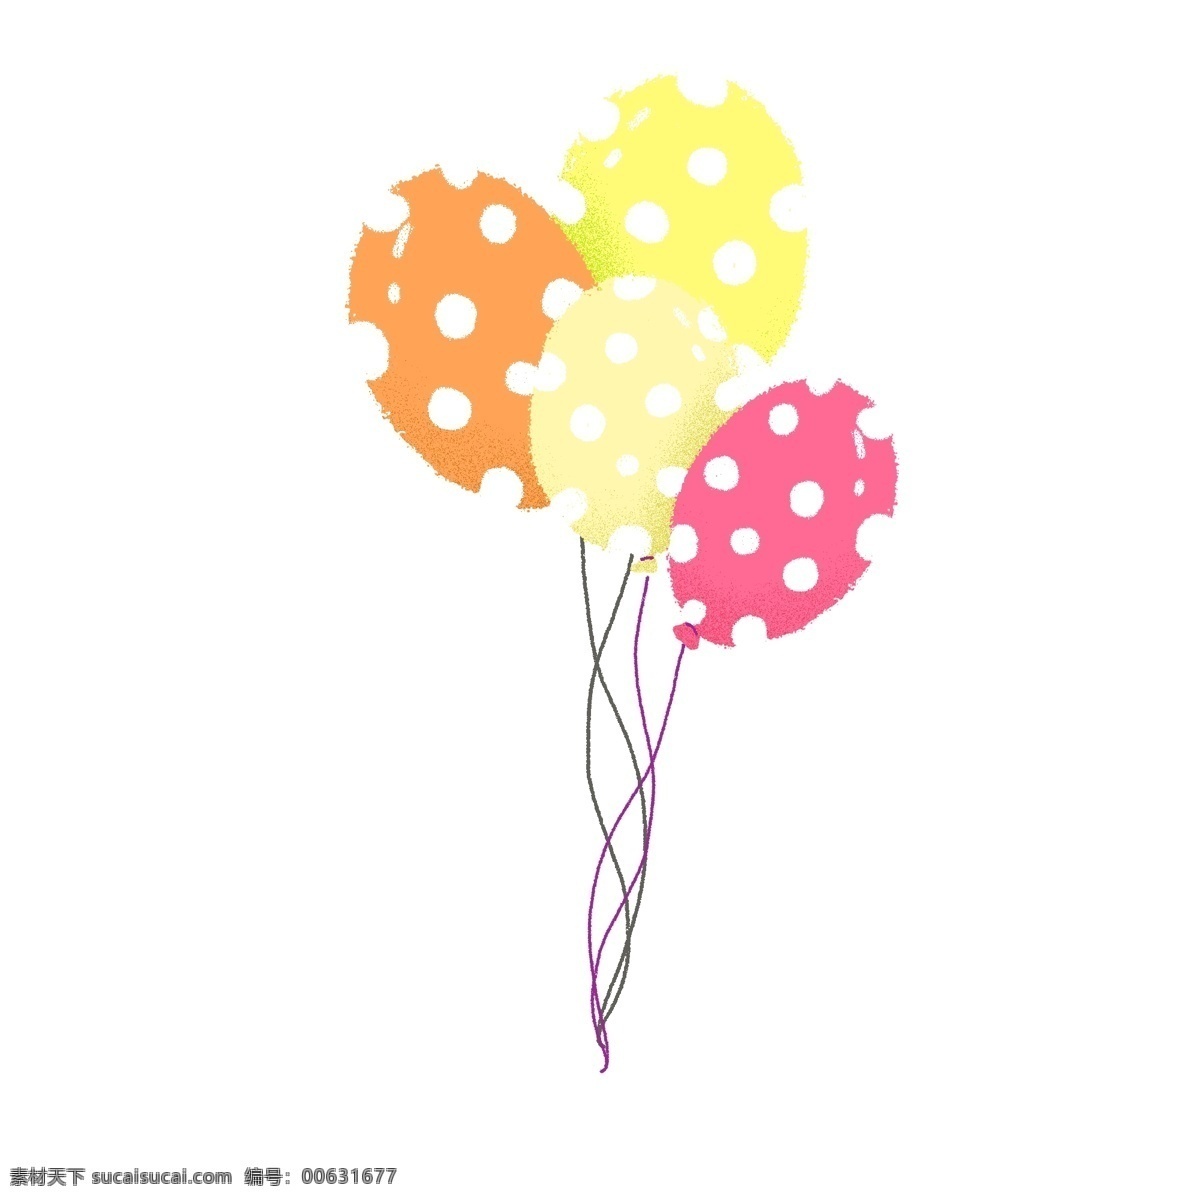 斑点气球 手绘 插画 简单